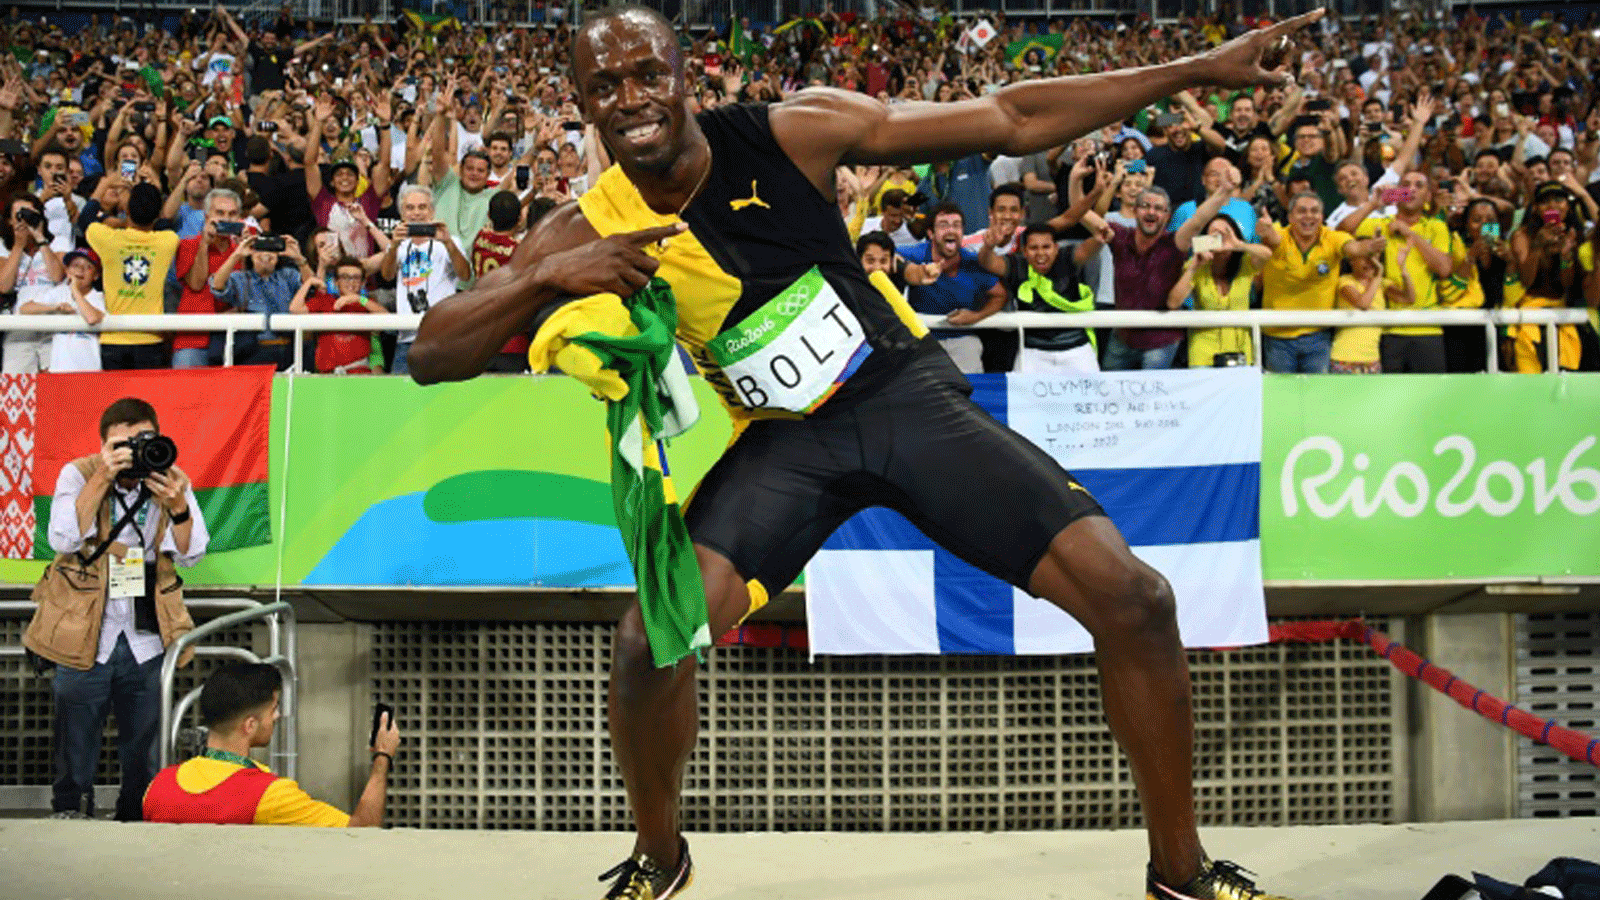 الجامايكي أوسين بولت يقوم بحركته الشهيرة بعد فوزه مع منتخب بلاده في سباق التتابع أربع مرات 100م خلال أولمبياد ريو في البرازيل في 20 آب/أغسطس 2016